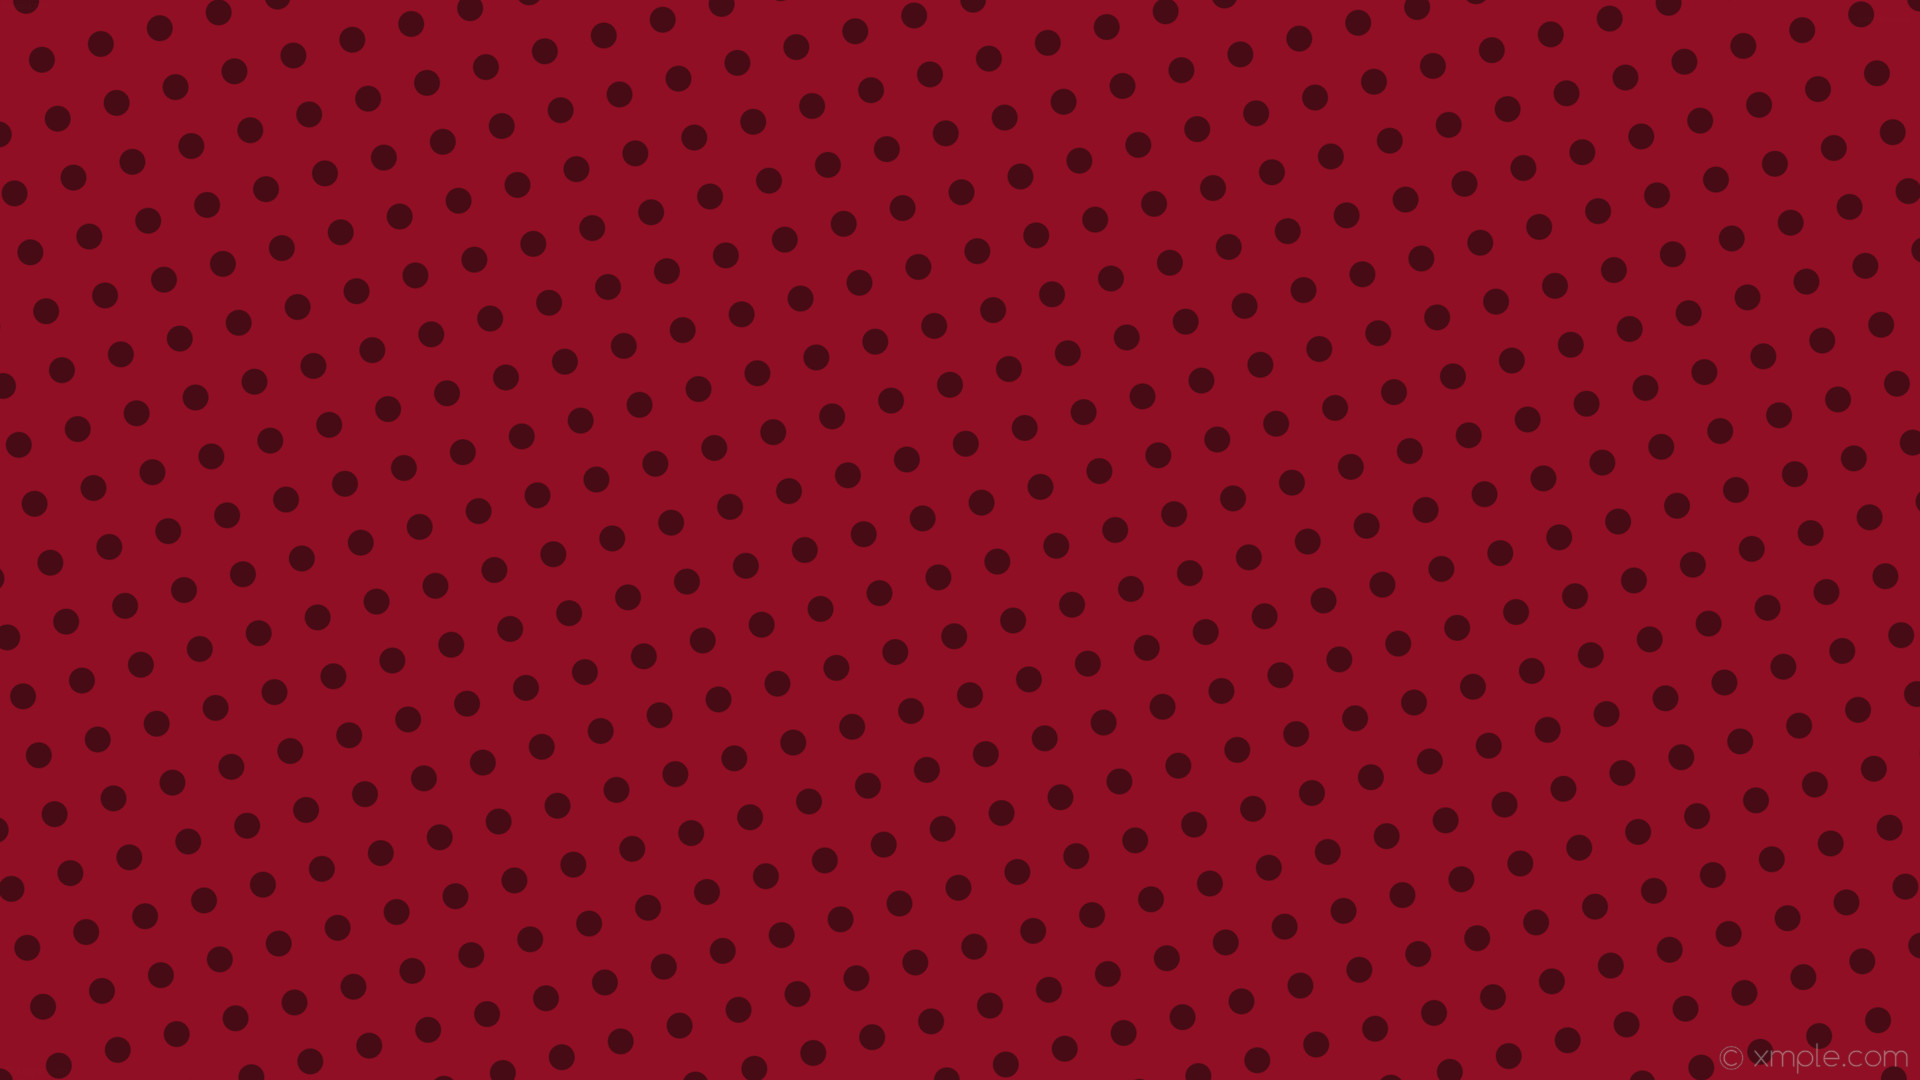 1920x1080 wallpaper spots red polka dots dark red #900f24 #470b15 105Â° 26px 61px